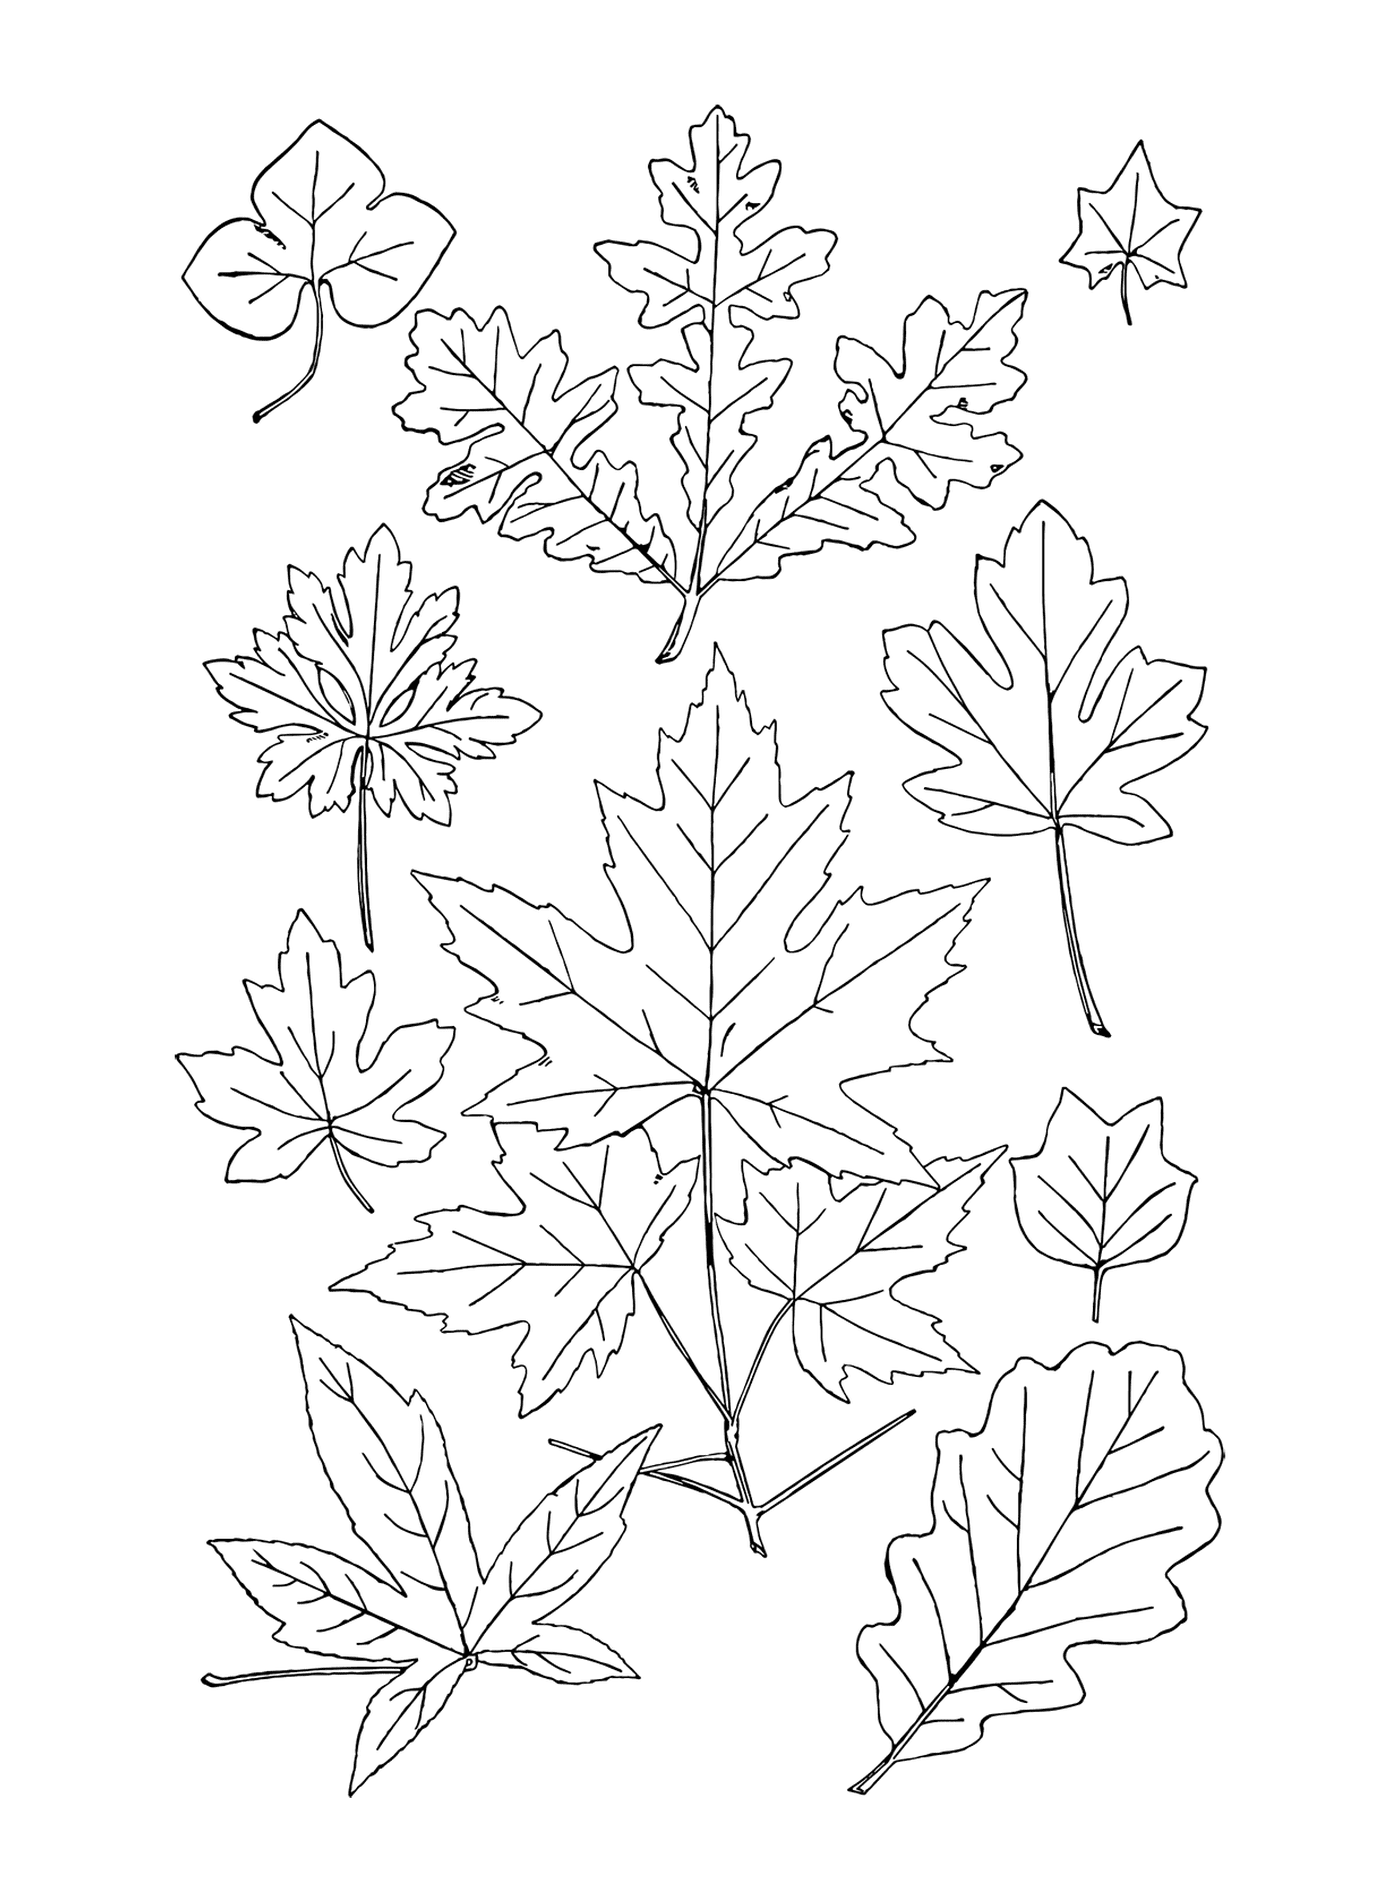  Linea di una moltitudine di foglie autunnali 